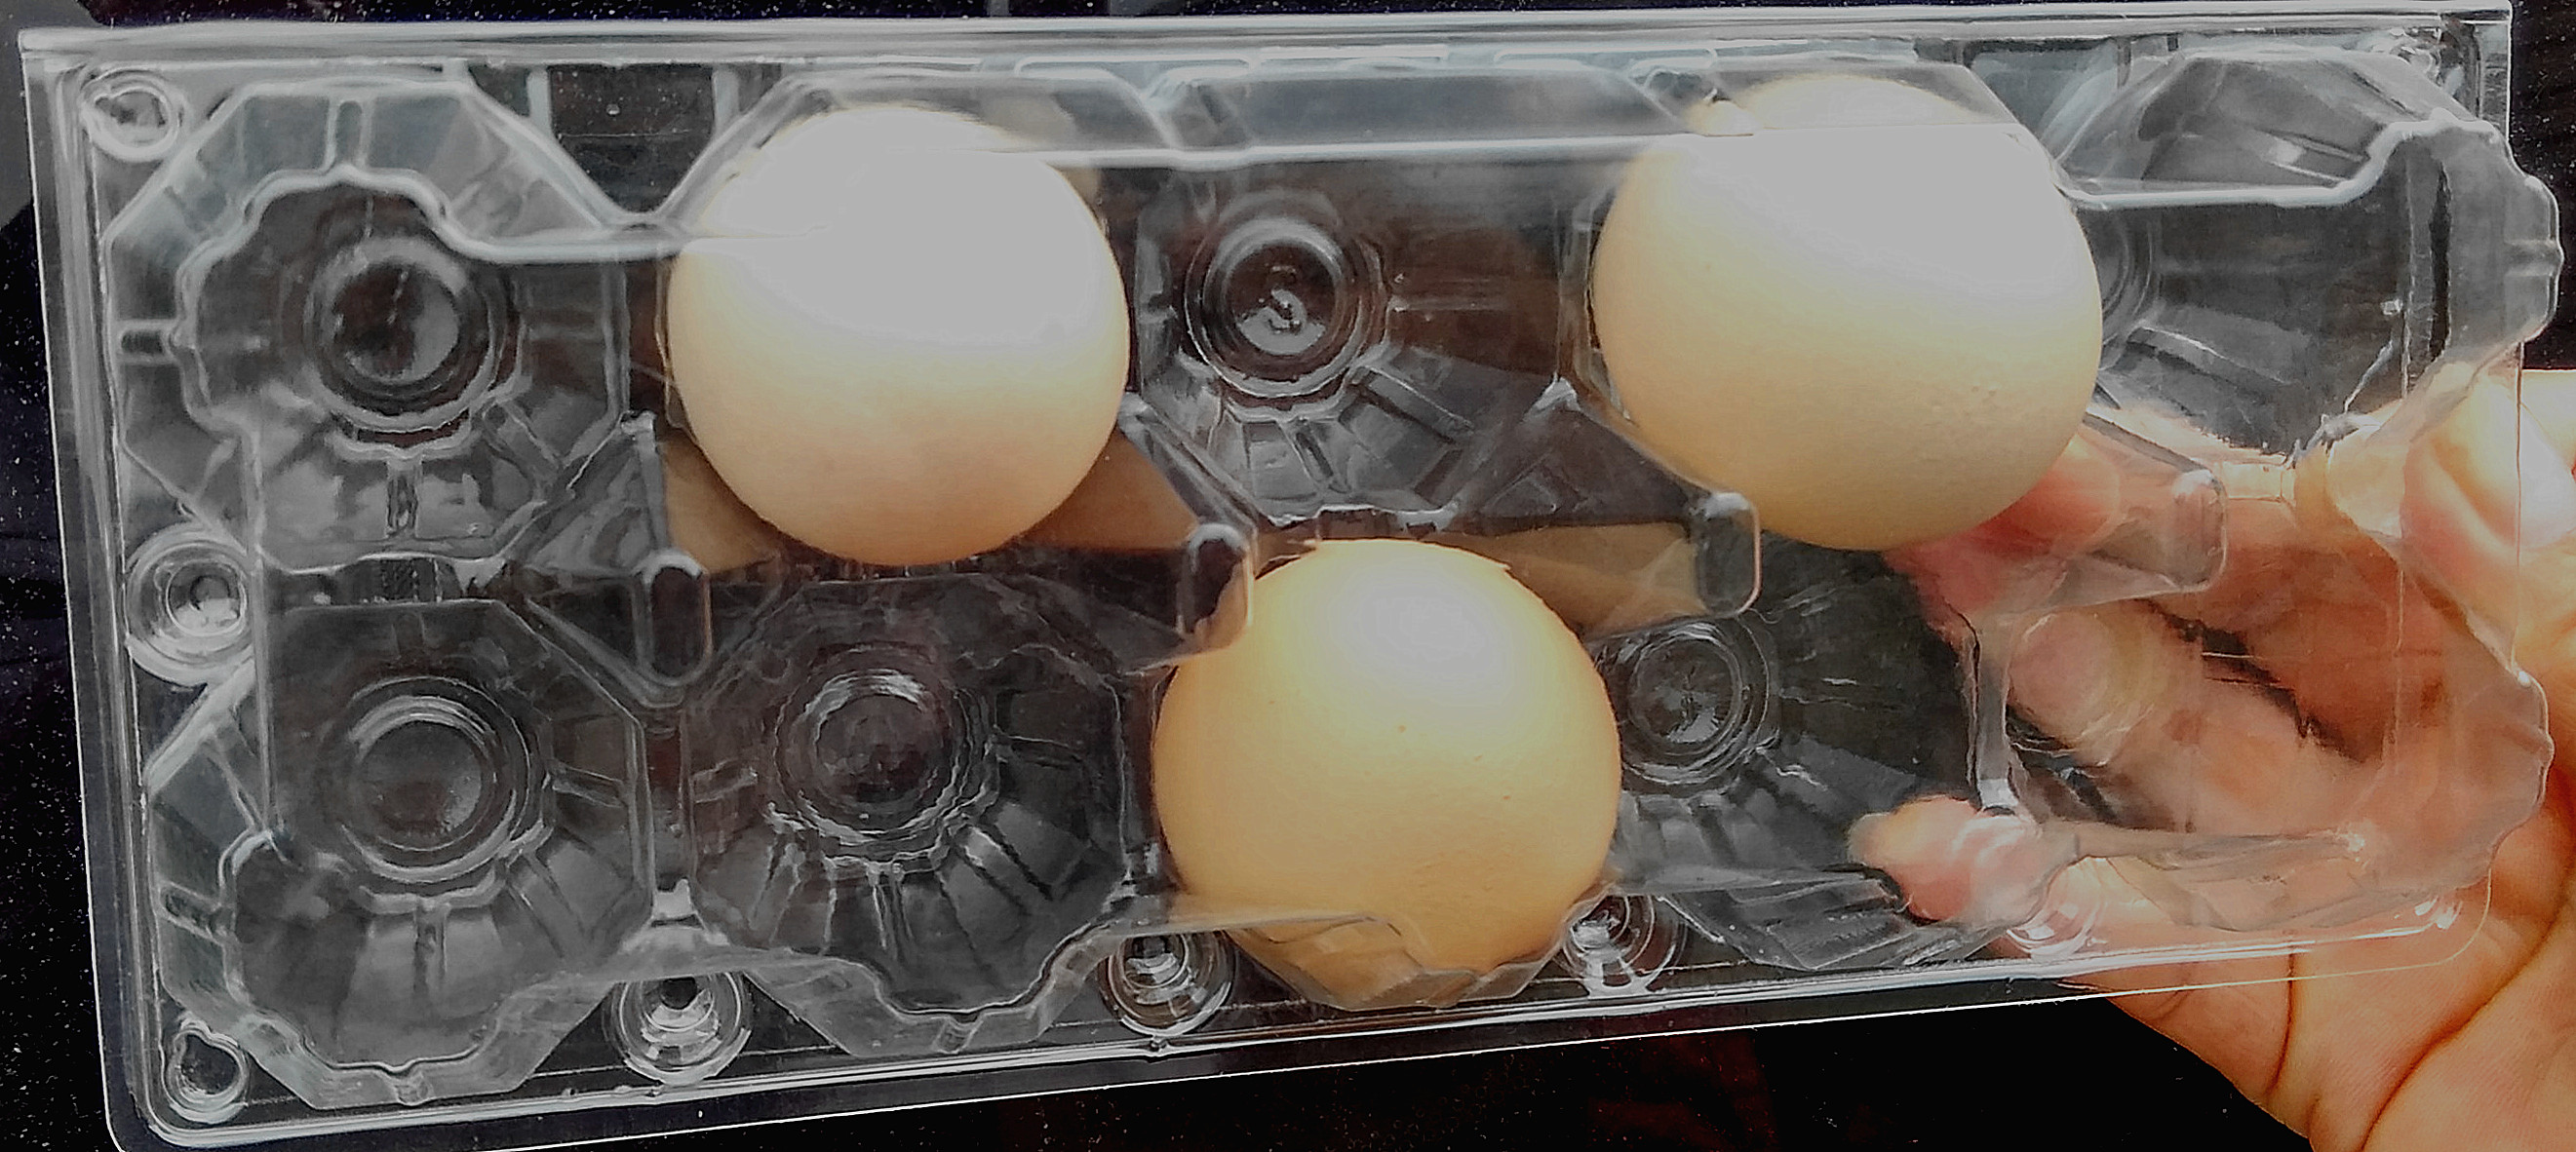 10枚中小号蛋盒鸡蛋包装盒土鸡蛋托盘塑料蛋托吸塑蛋托鸡蛋盒高扣折扣优惠信息